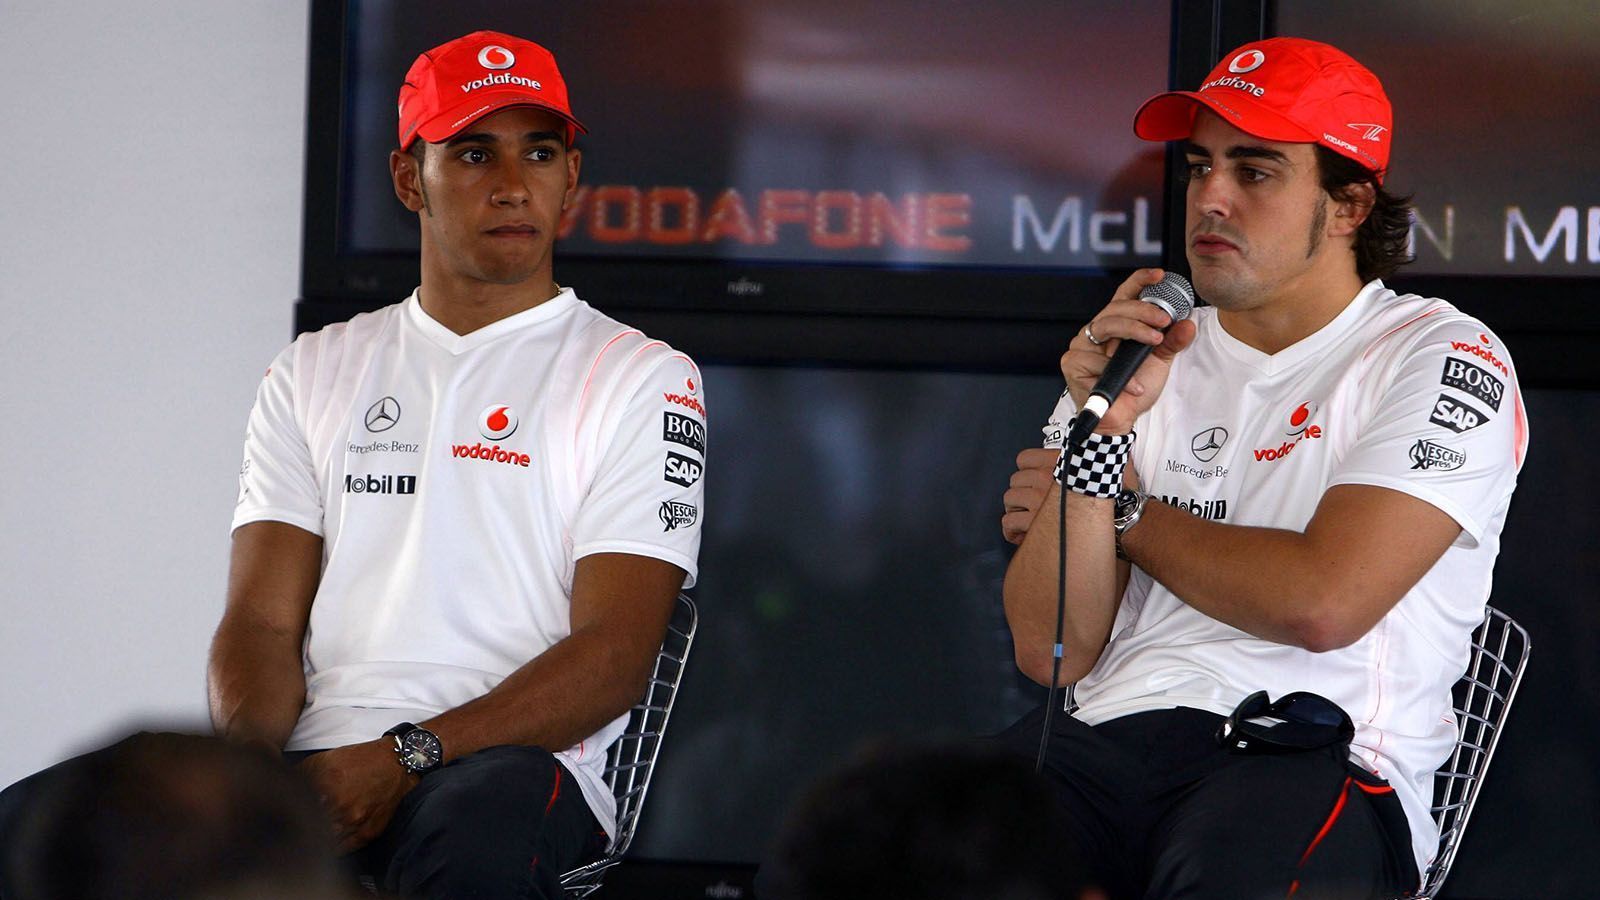 
                <strong>Lewis Hamilton gegen Fernando Alonso (McLaren)</strong><br>
                Beide lieferten sich lange ein "Kopf-an-Kopf"-Rennen, bei dem Alonso in Ungarn zu unfairen Mitteln griff: Im Qualifying blieb der Spanier so lange in der Box stehen, bis Hamilton keine Zeit mehr hatte, um noch eine gezeitete Runde zu fahren. Alonso wurde im Nachhinein mit einer Strafe von fünf Plätzen belegt. Im Lauf der Saison lieferten sich Hamilton und sein Teamkollege immer weiter kleinere Mätzchen, die am Ende sogar dafür sorgten, dass keiner der beiden am Ende Weltmeister wurde. Ferrari-Pilot Kimi Räikkönen entpuppte sich als der "lachende Dritte" und schnappte sich im letzten Rennen den WM-Titel. Nach nur einer Saison verabschiedete sich Alonso wieder von McLaren und kehrte zu Renault zurück.
              